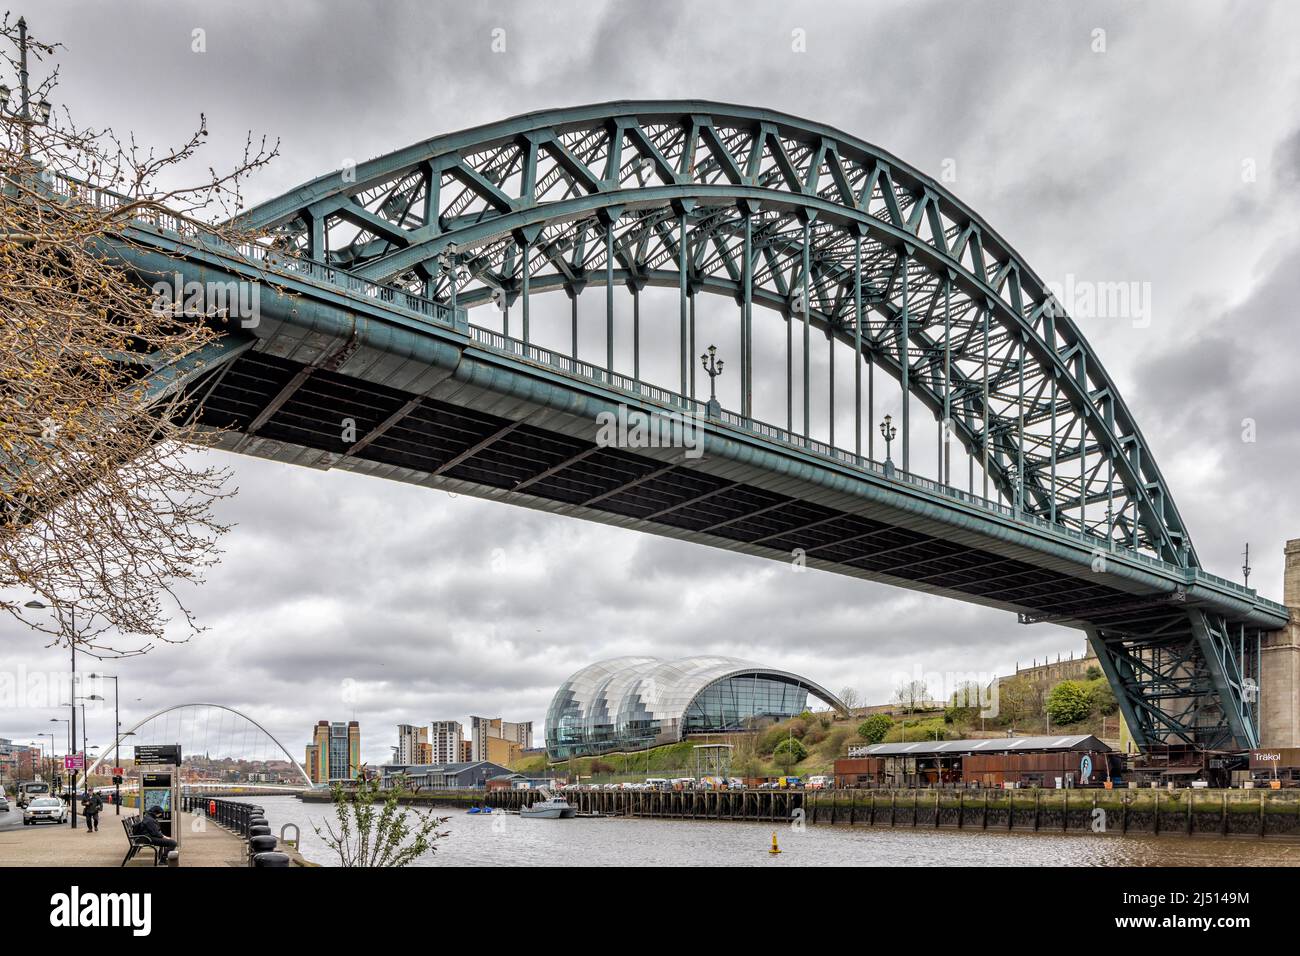 Le pont Tyne, pris de Newcastle Quayside en regardant vers l'est le long de la rivière Tyne vers le Sage Gateshead et le pont Gateshead Millennium. Banque D'Images